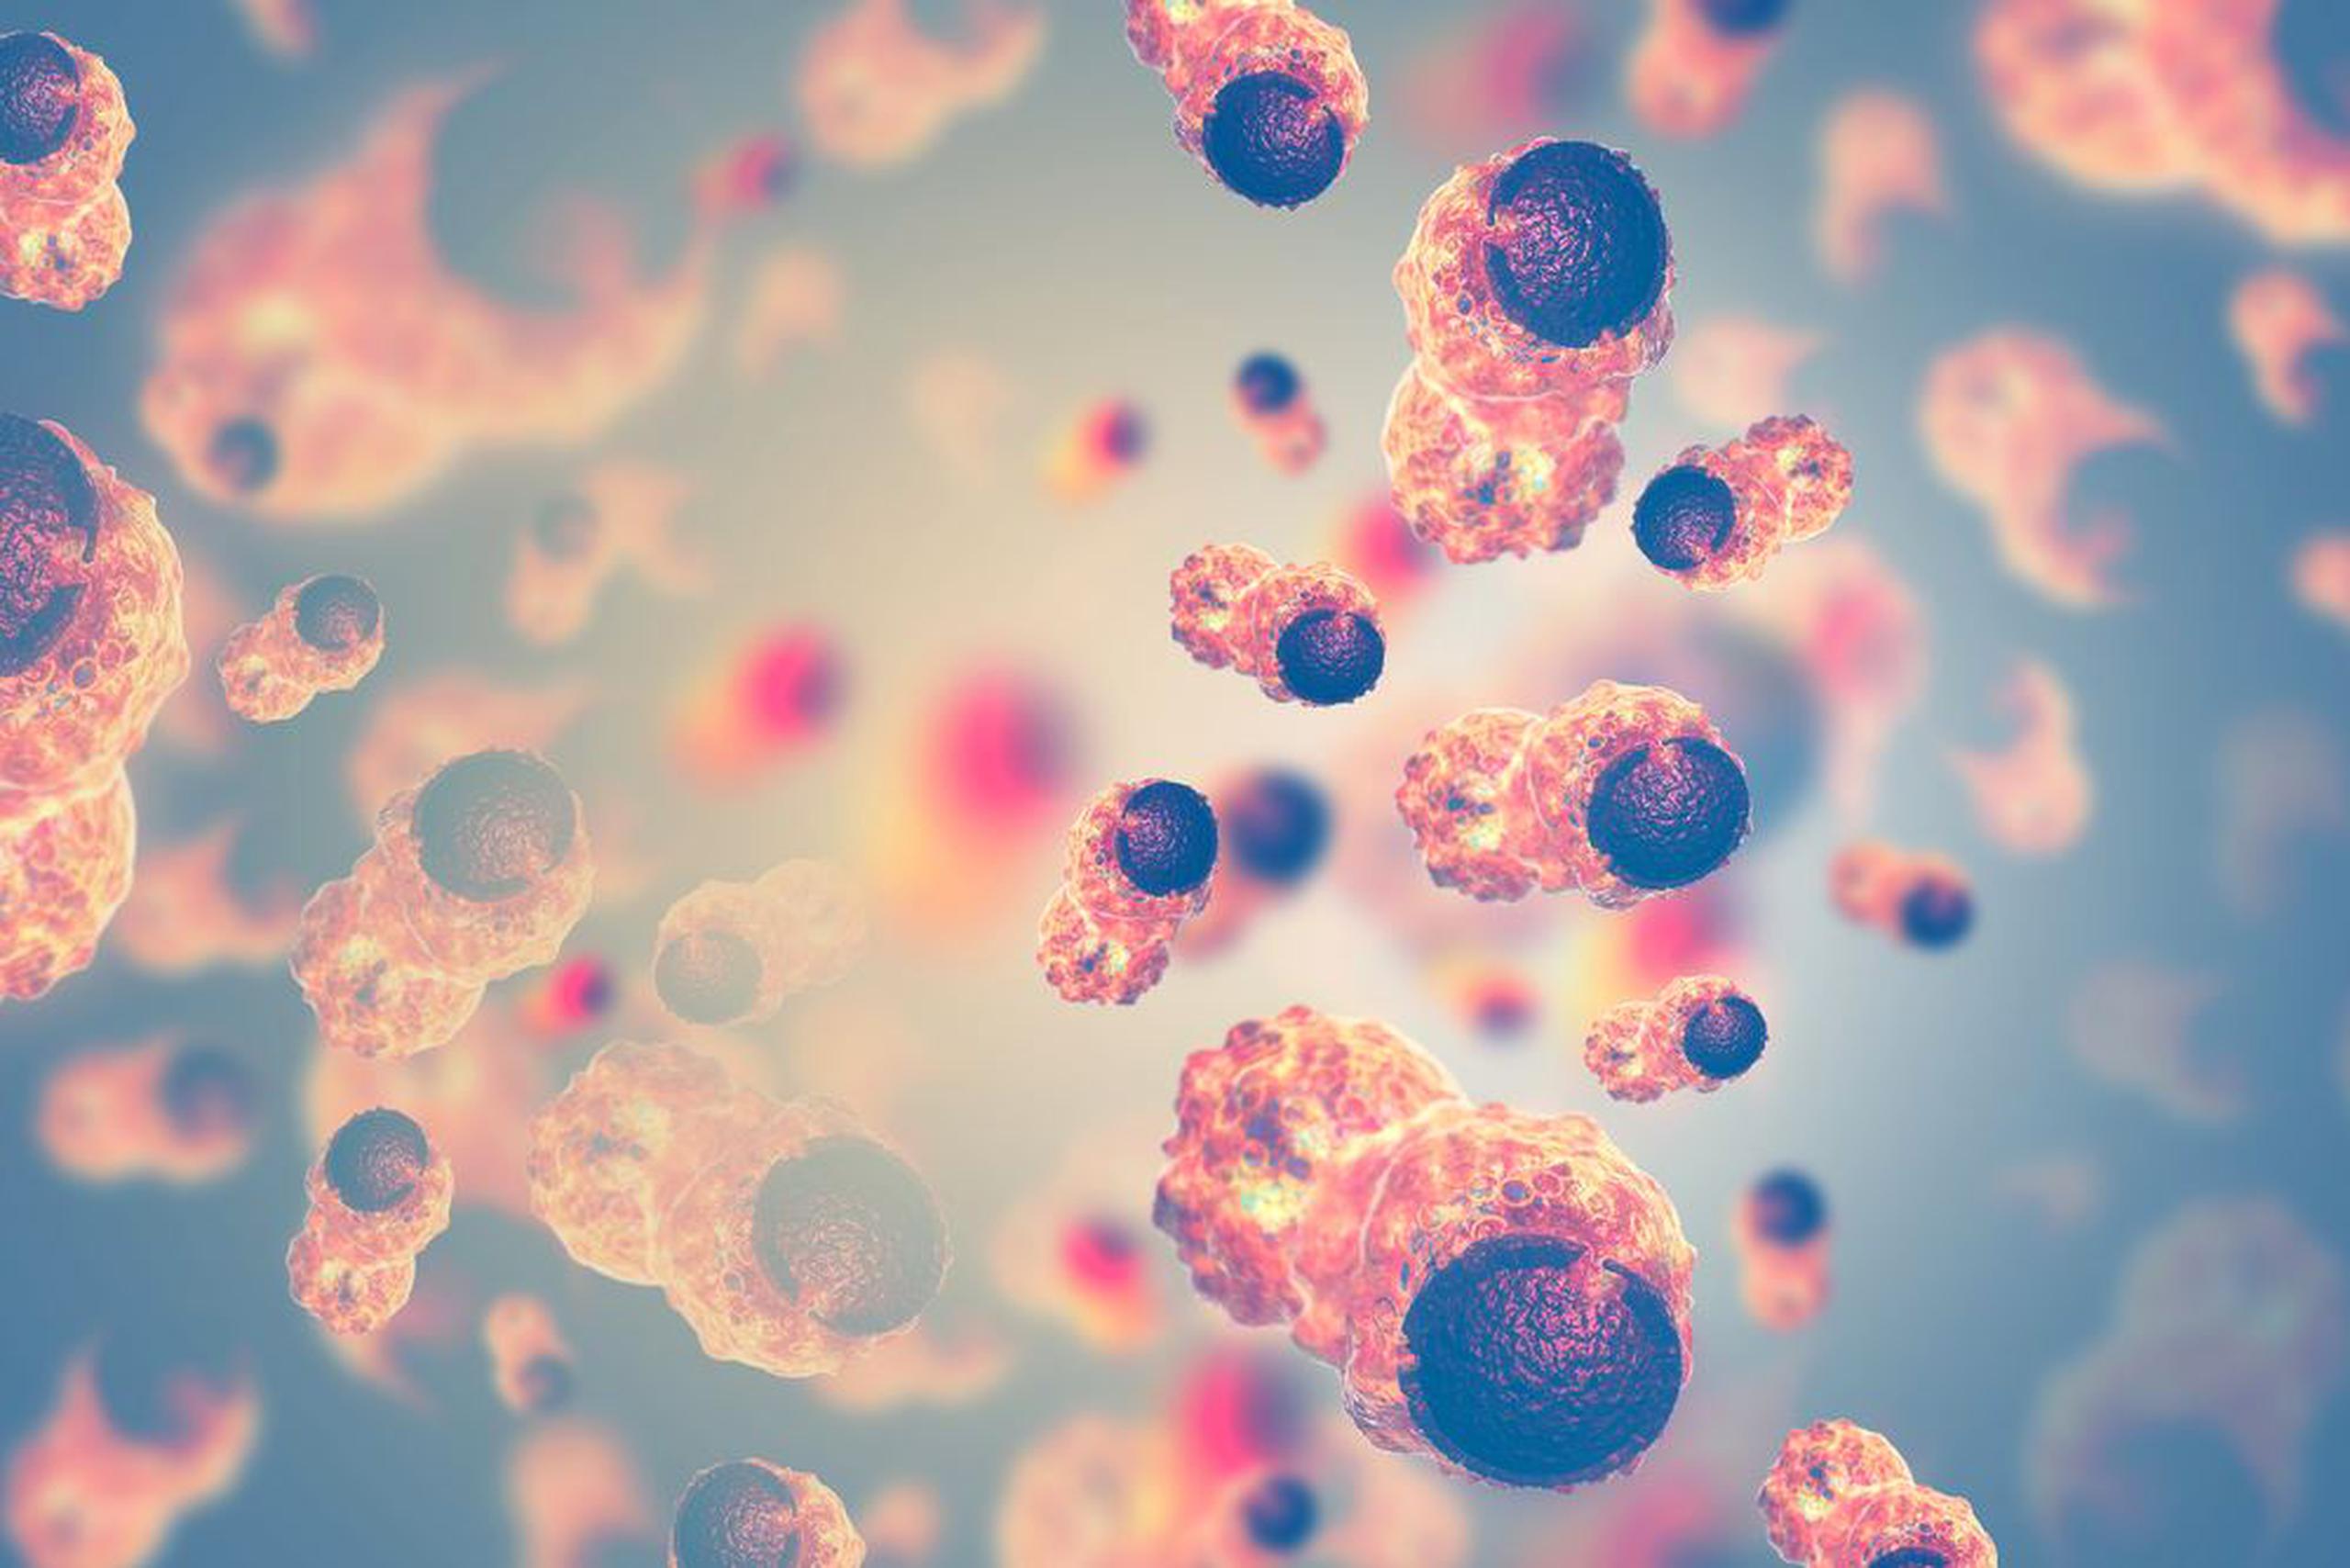 Imagen de células cancerosas. (Shutterstock)